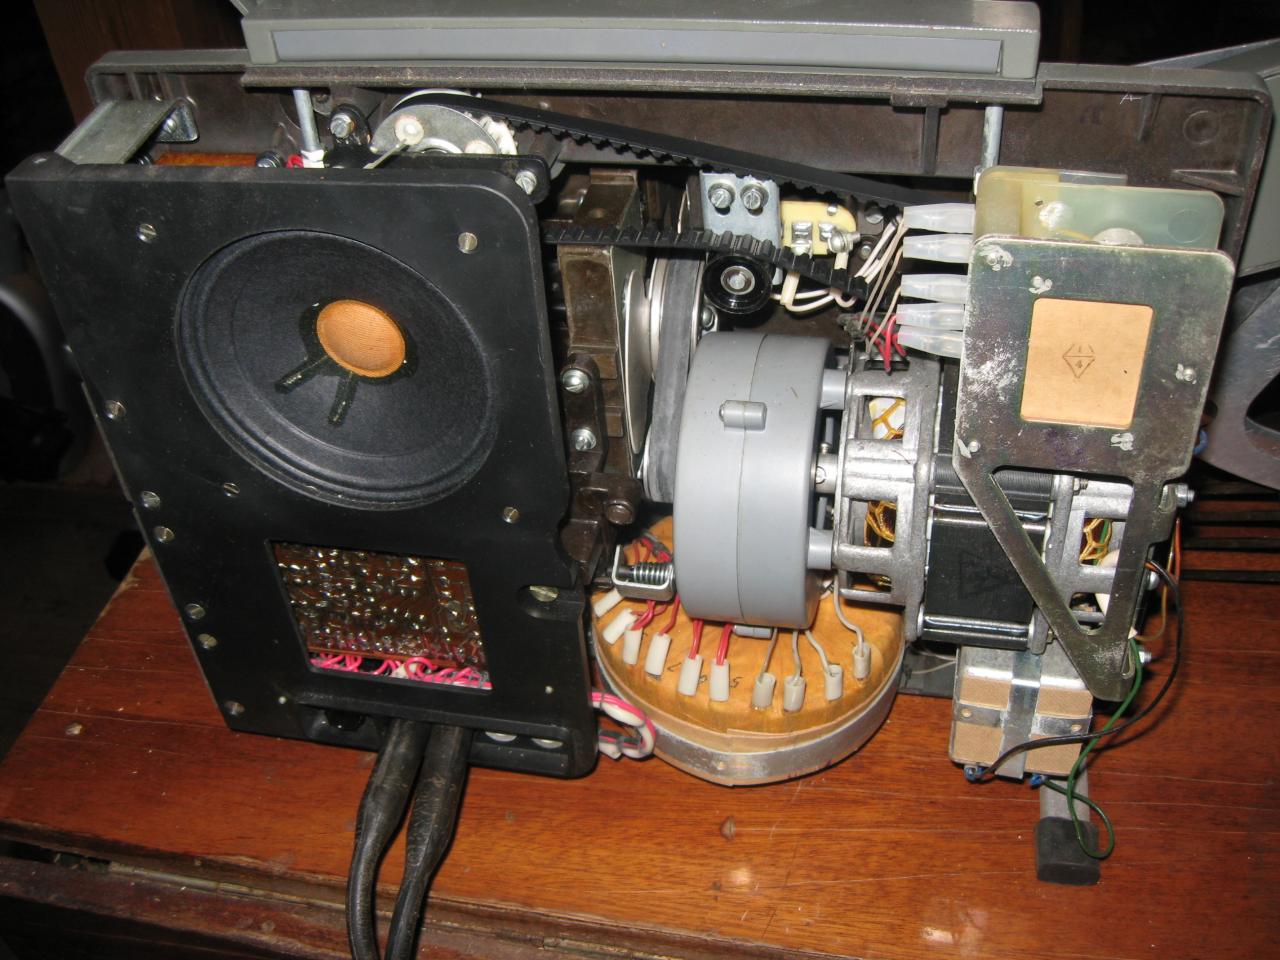 инструкция кинопроектора радуга 2 кп-1м